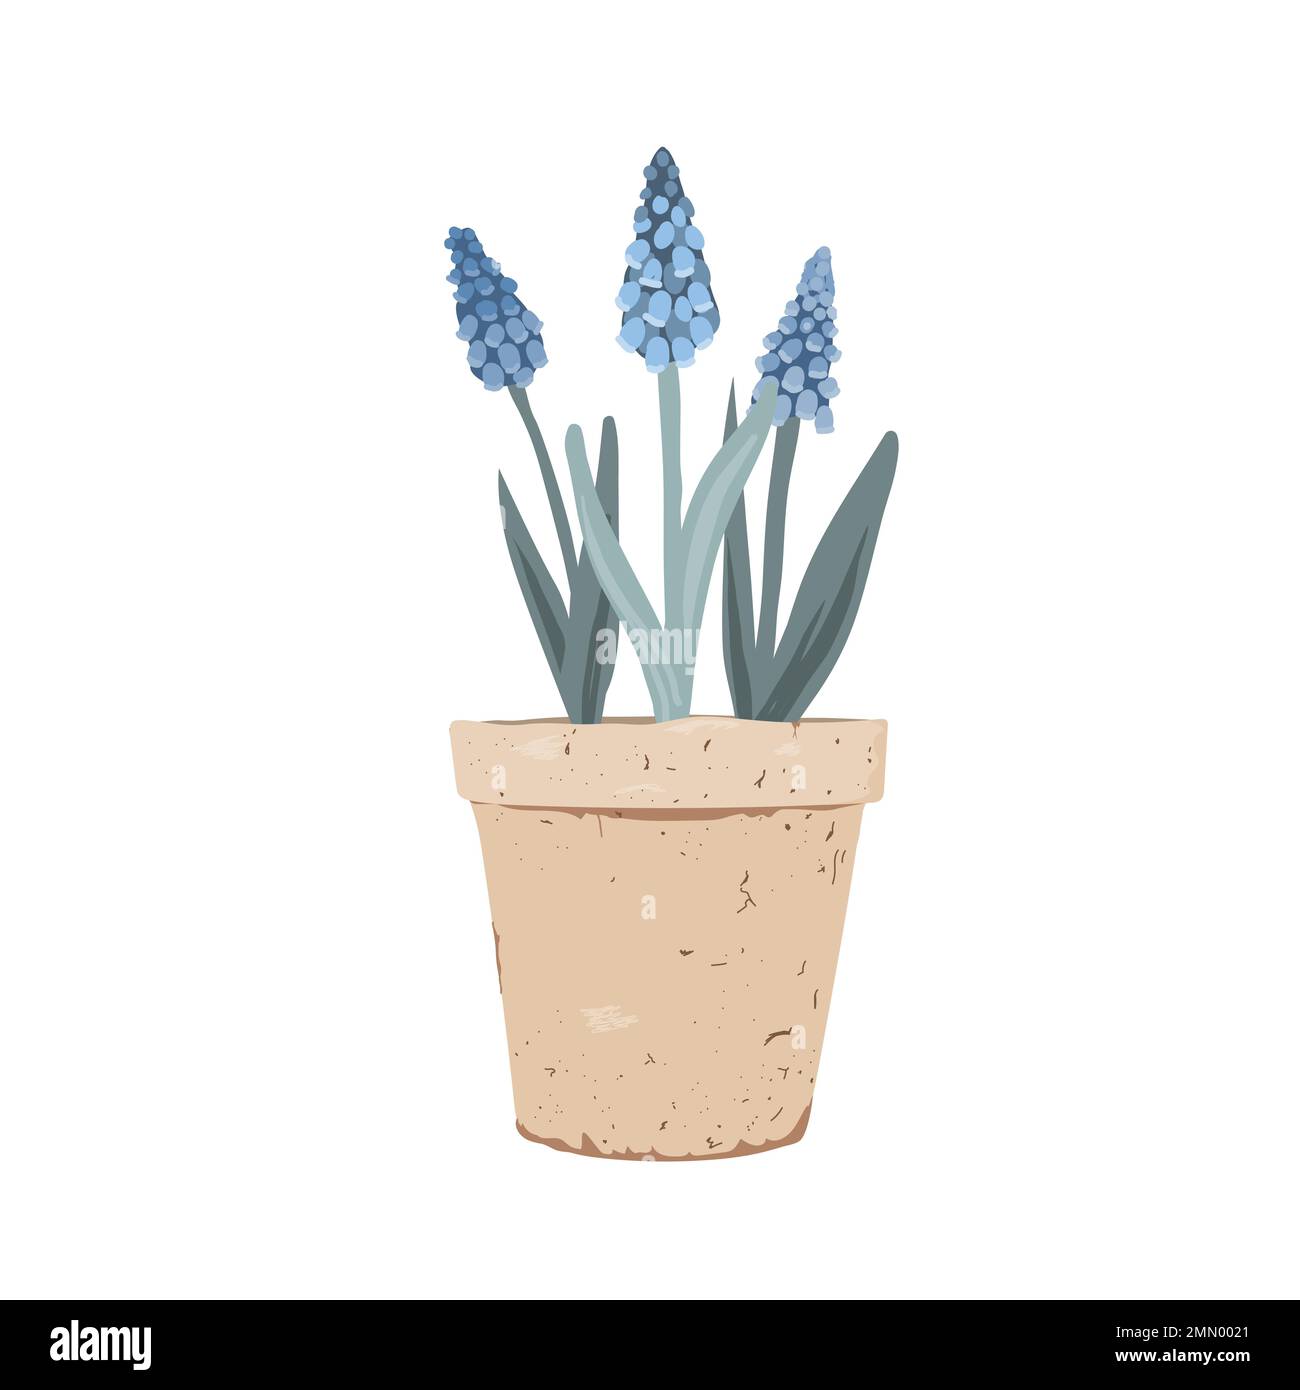 Pianta Muscari in vaso. Primi fiori di primavera in una pentola di argilla. Illustrazione vettoriale isolata su sfondo bianco Illustrazione Vettoriale